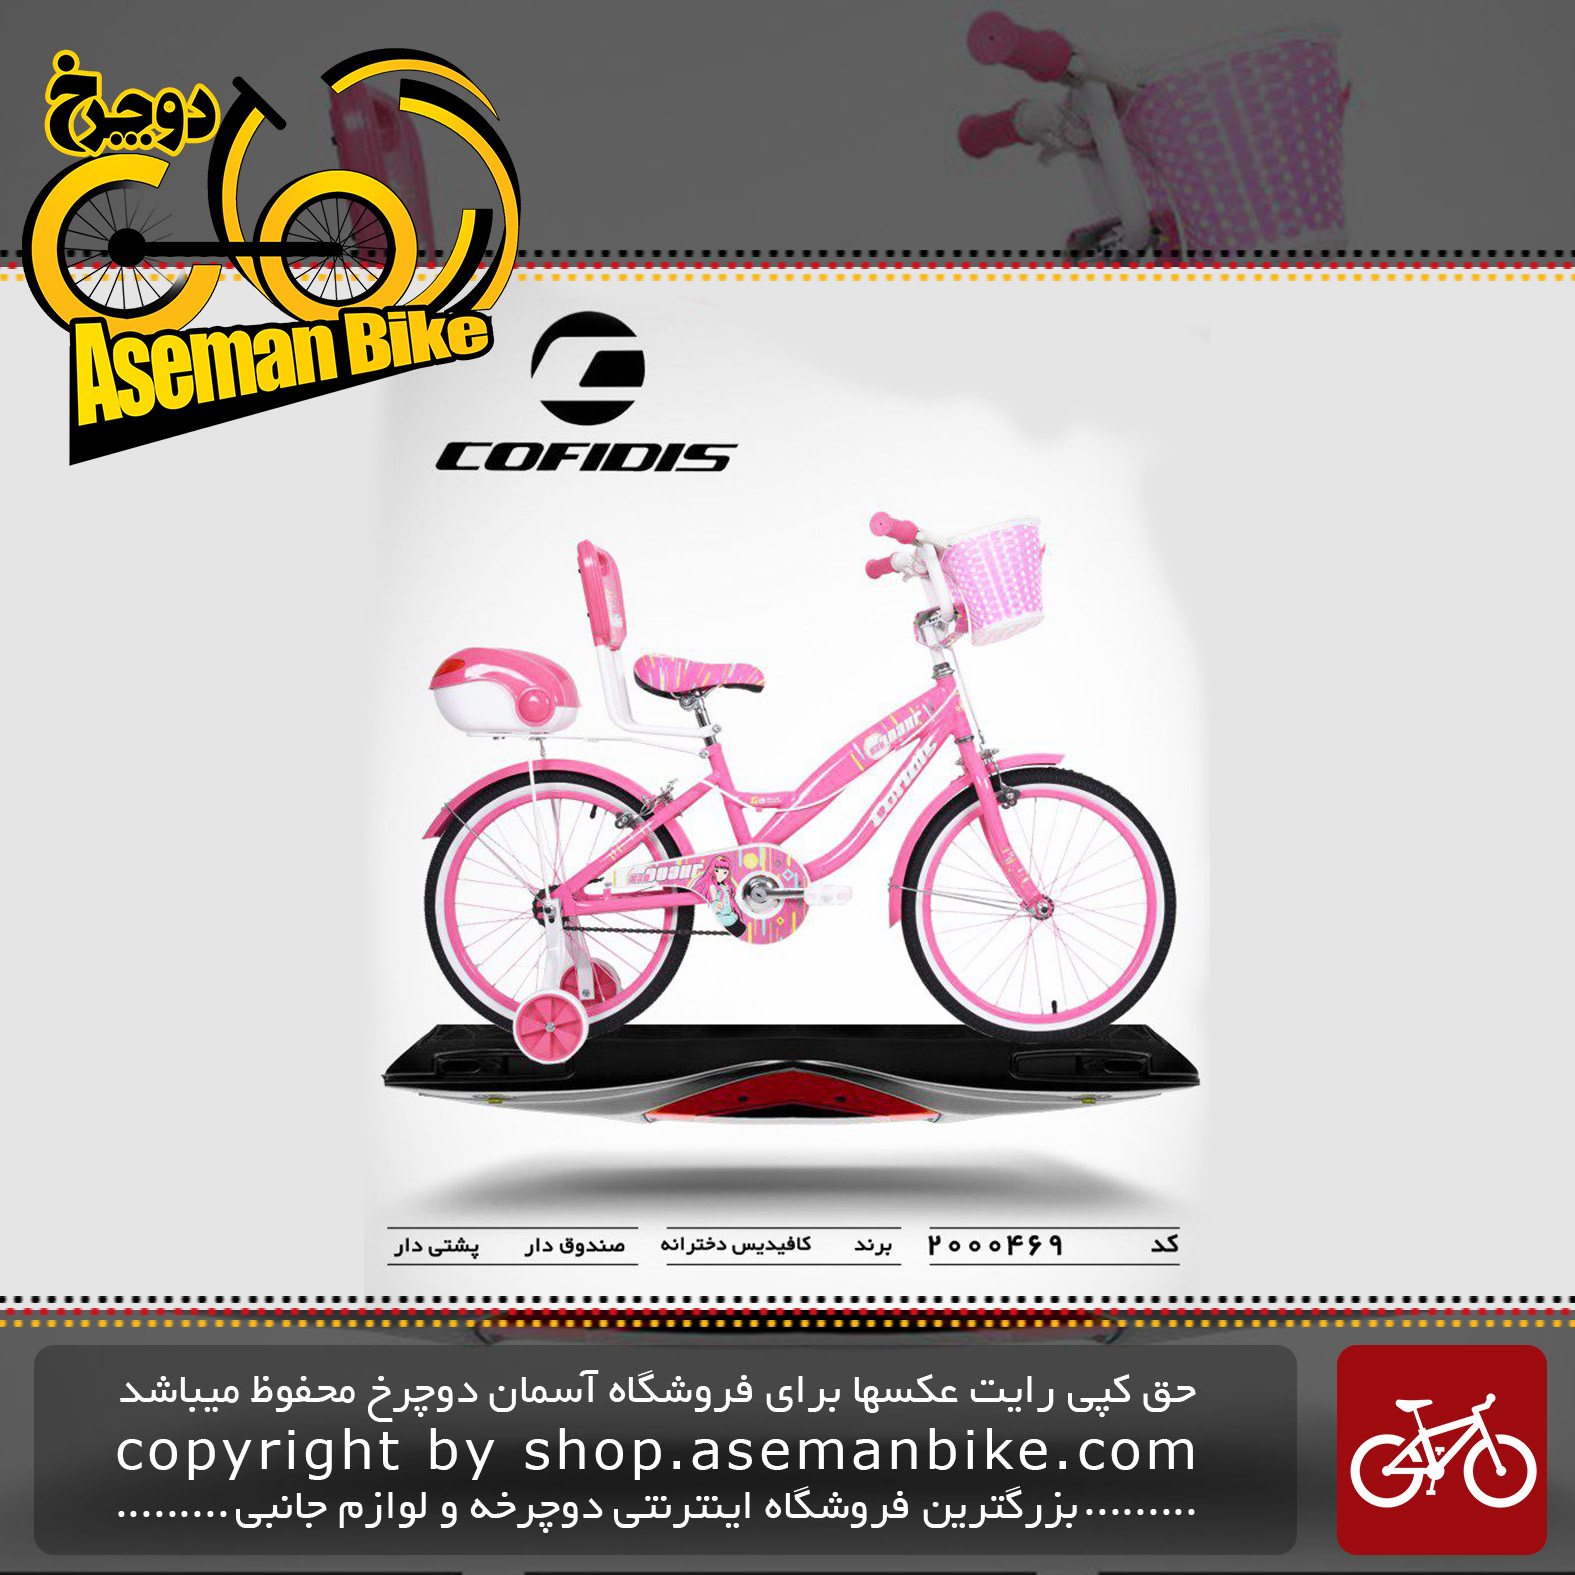 دوچرخه کافیدیس تایوان دخترانه صندوق و سبد دار مدل 469 سایز 20 COFIDIS Bicycle 469 Size 20 2019